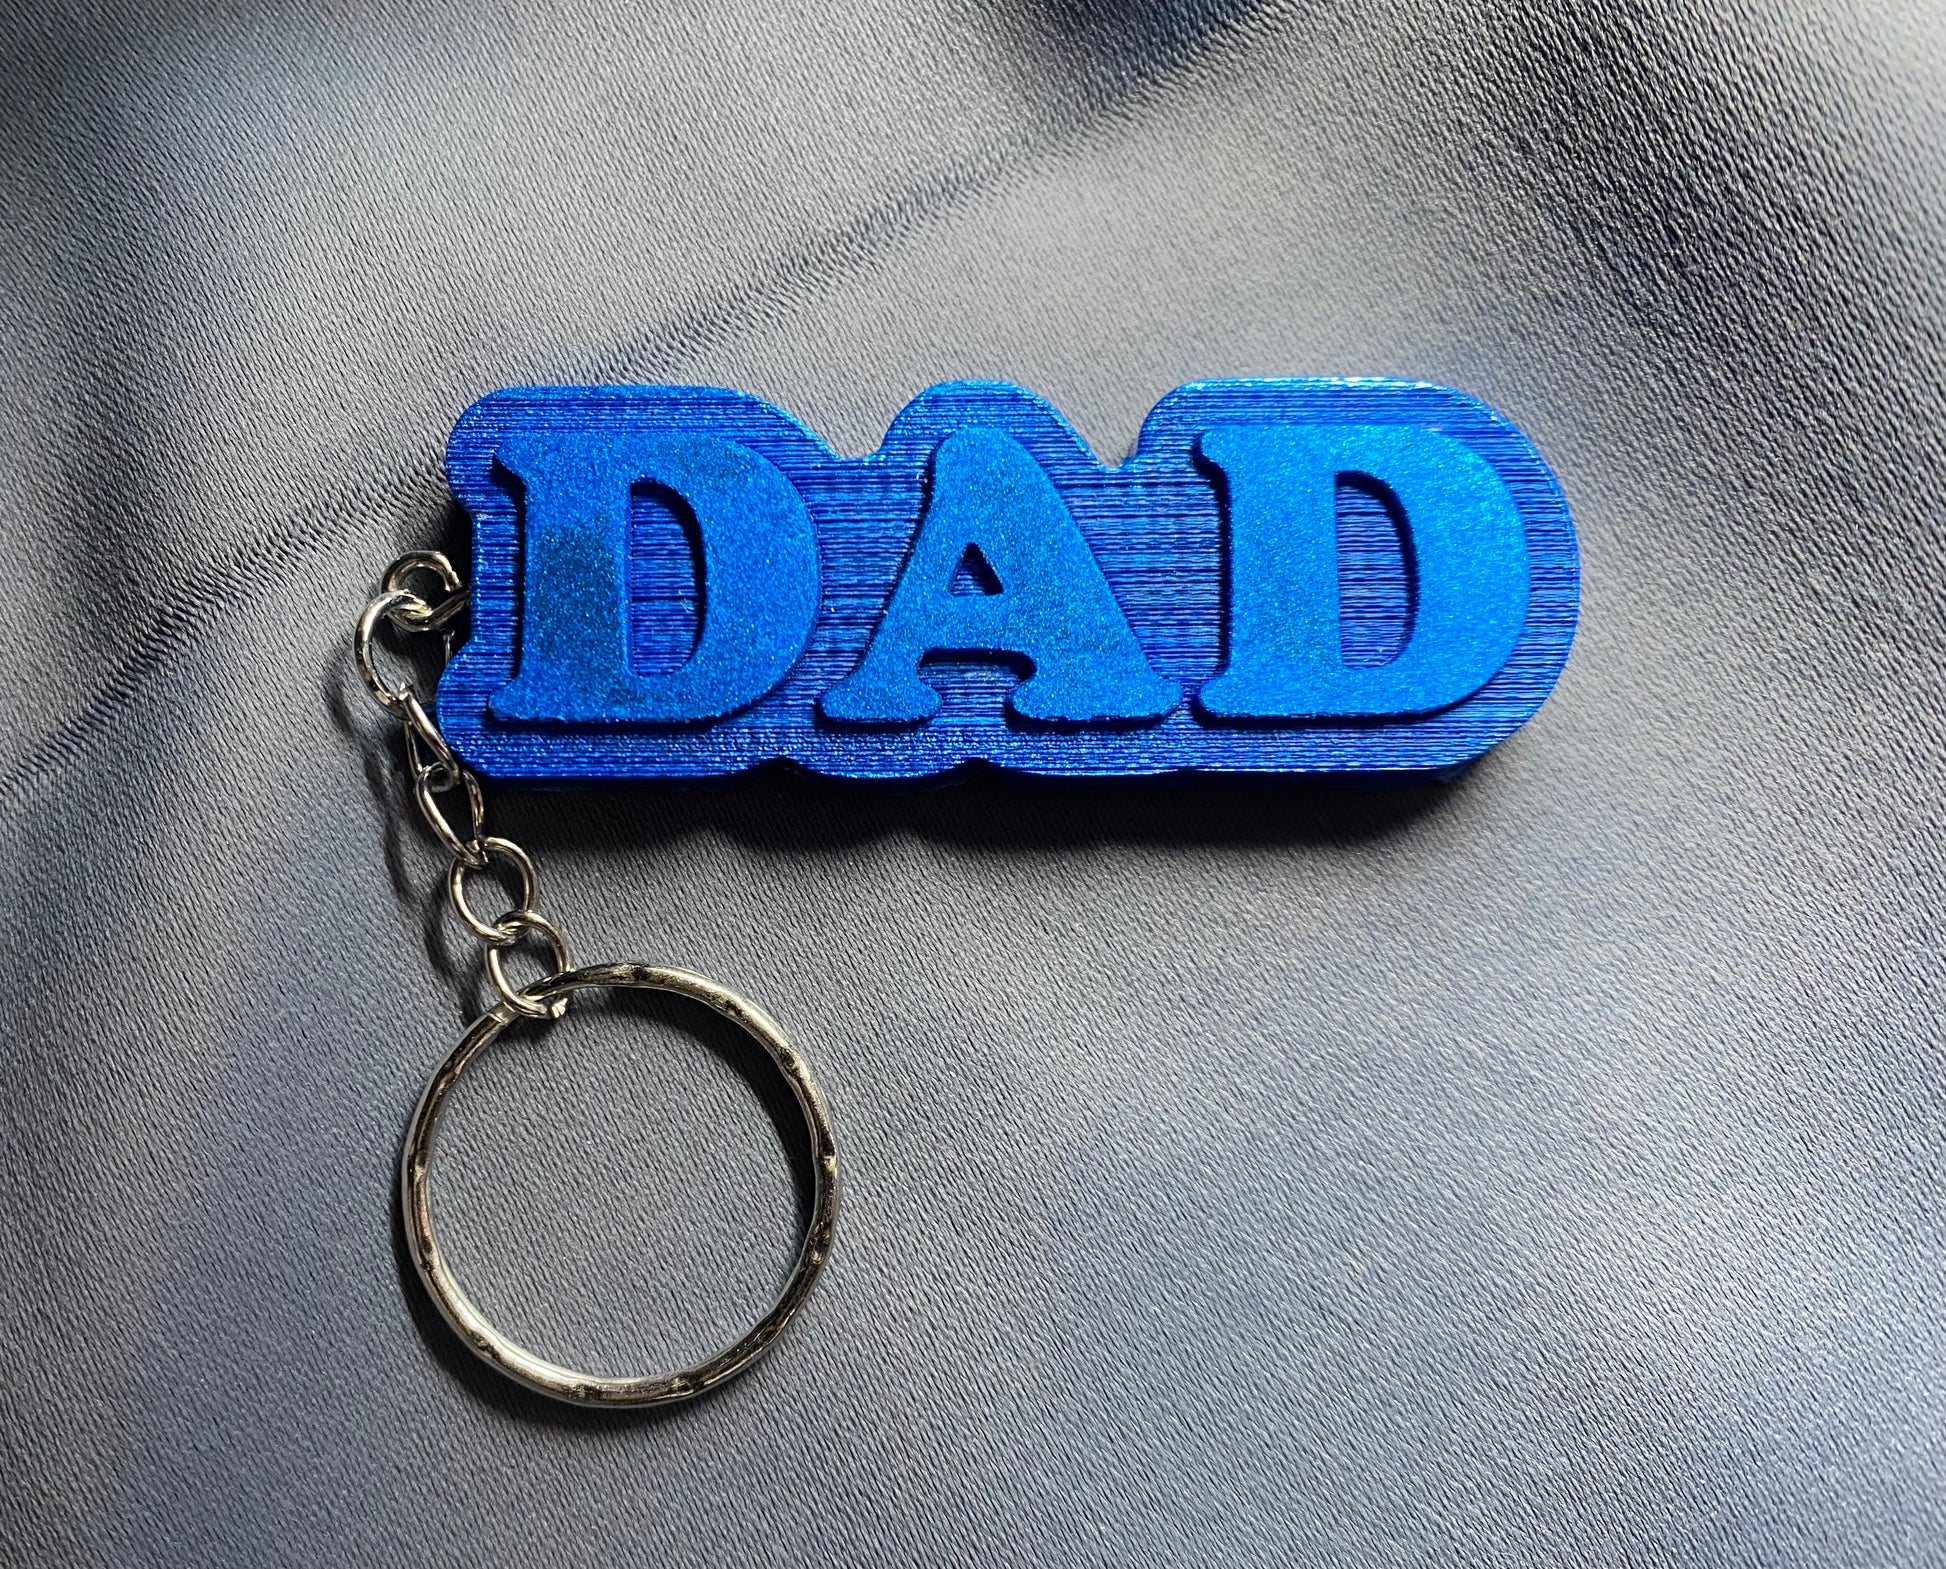 Dad Metallic Letter Key ring